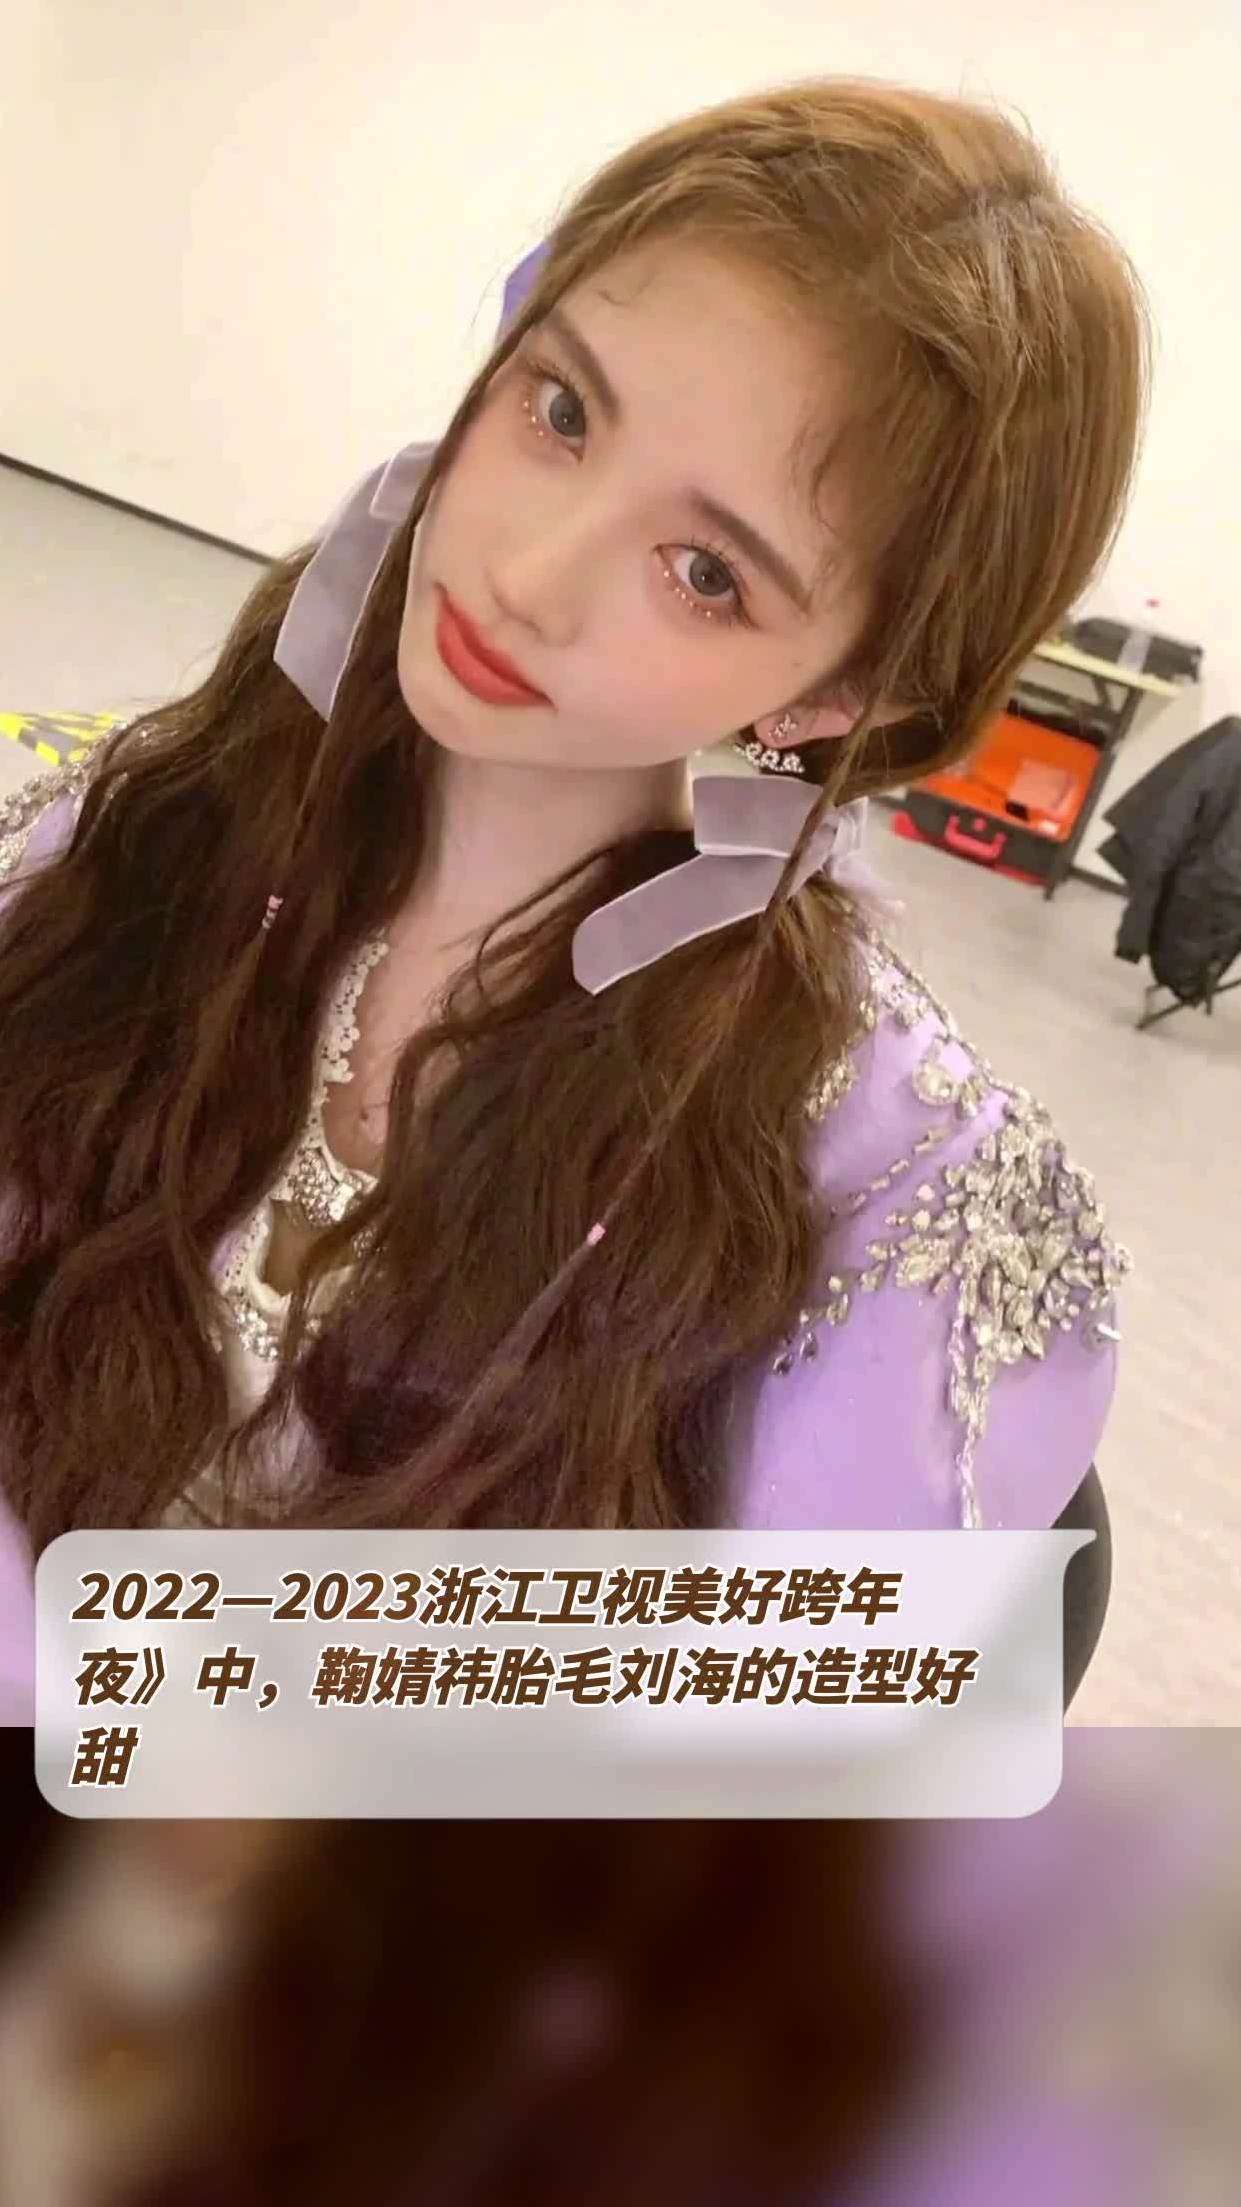 2022—2023浙江卫视美好跨年夜中,鞠婧祎胎毛刘海的造型好甜